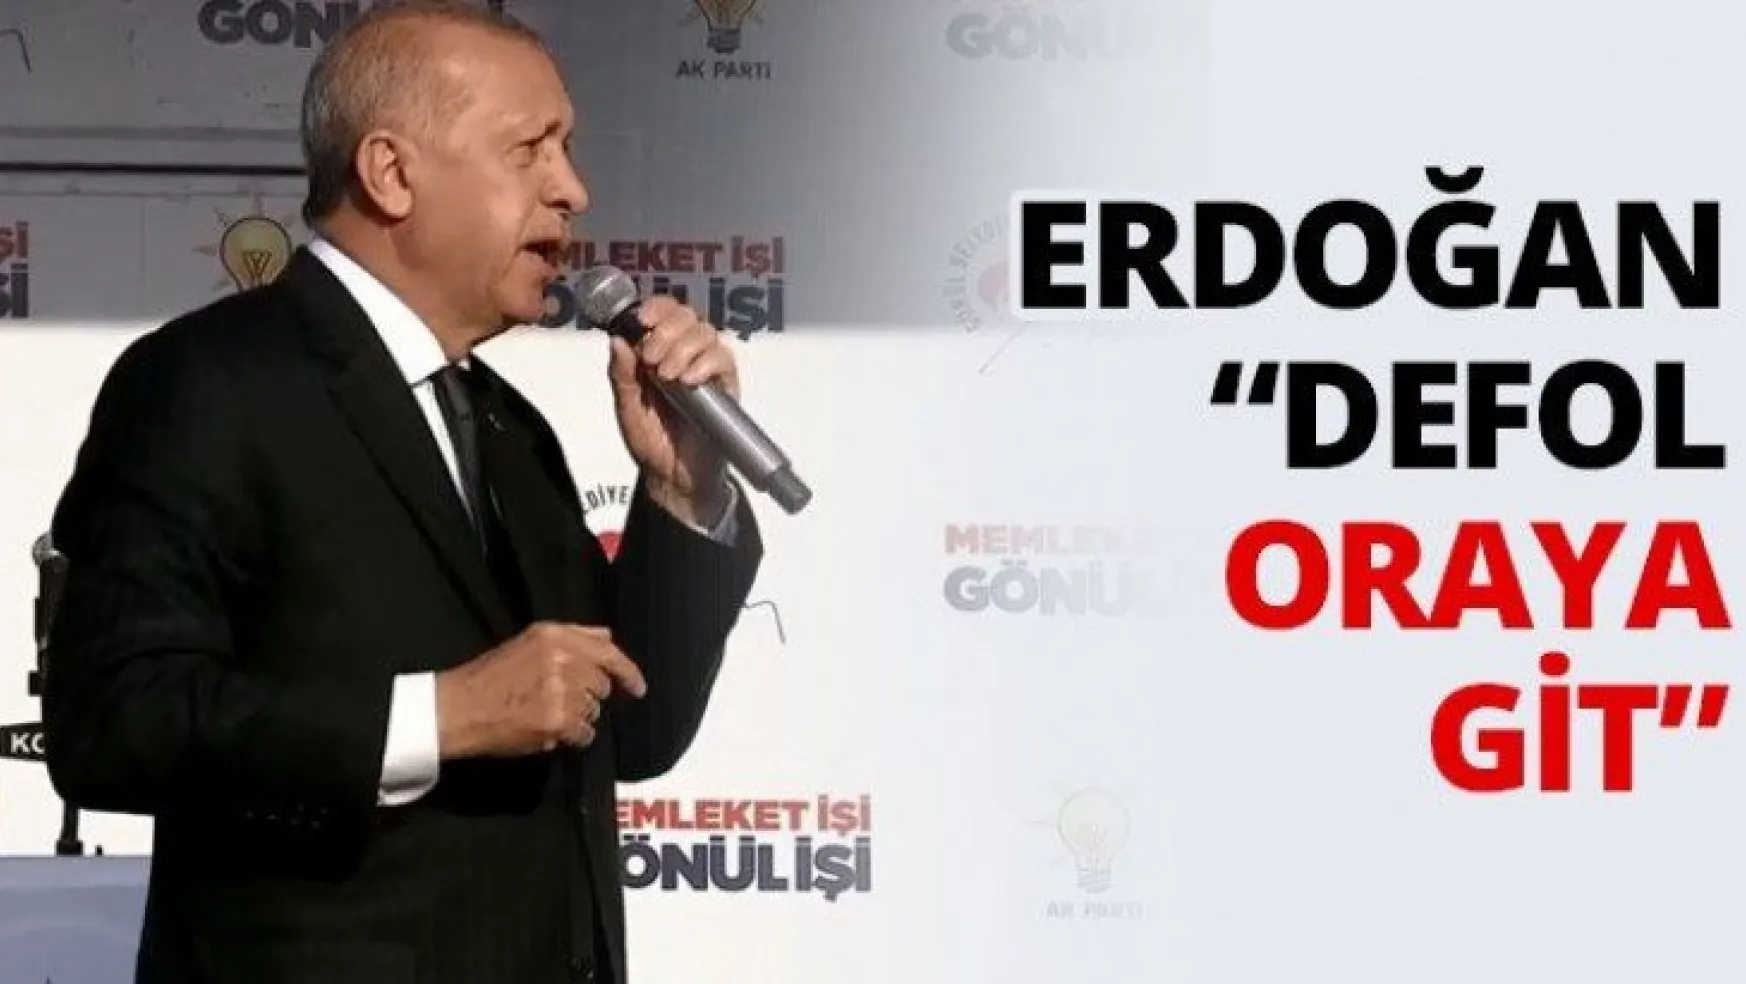 Erdoğan 'Defol oraya git'